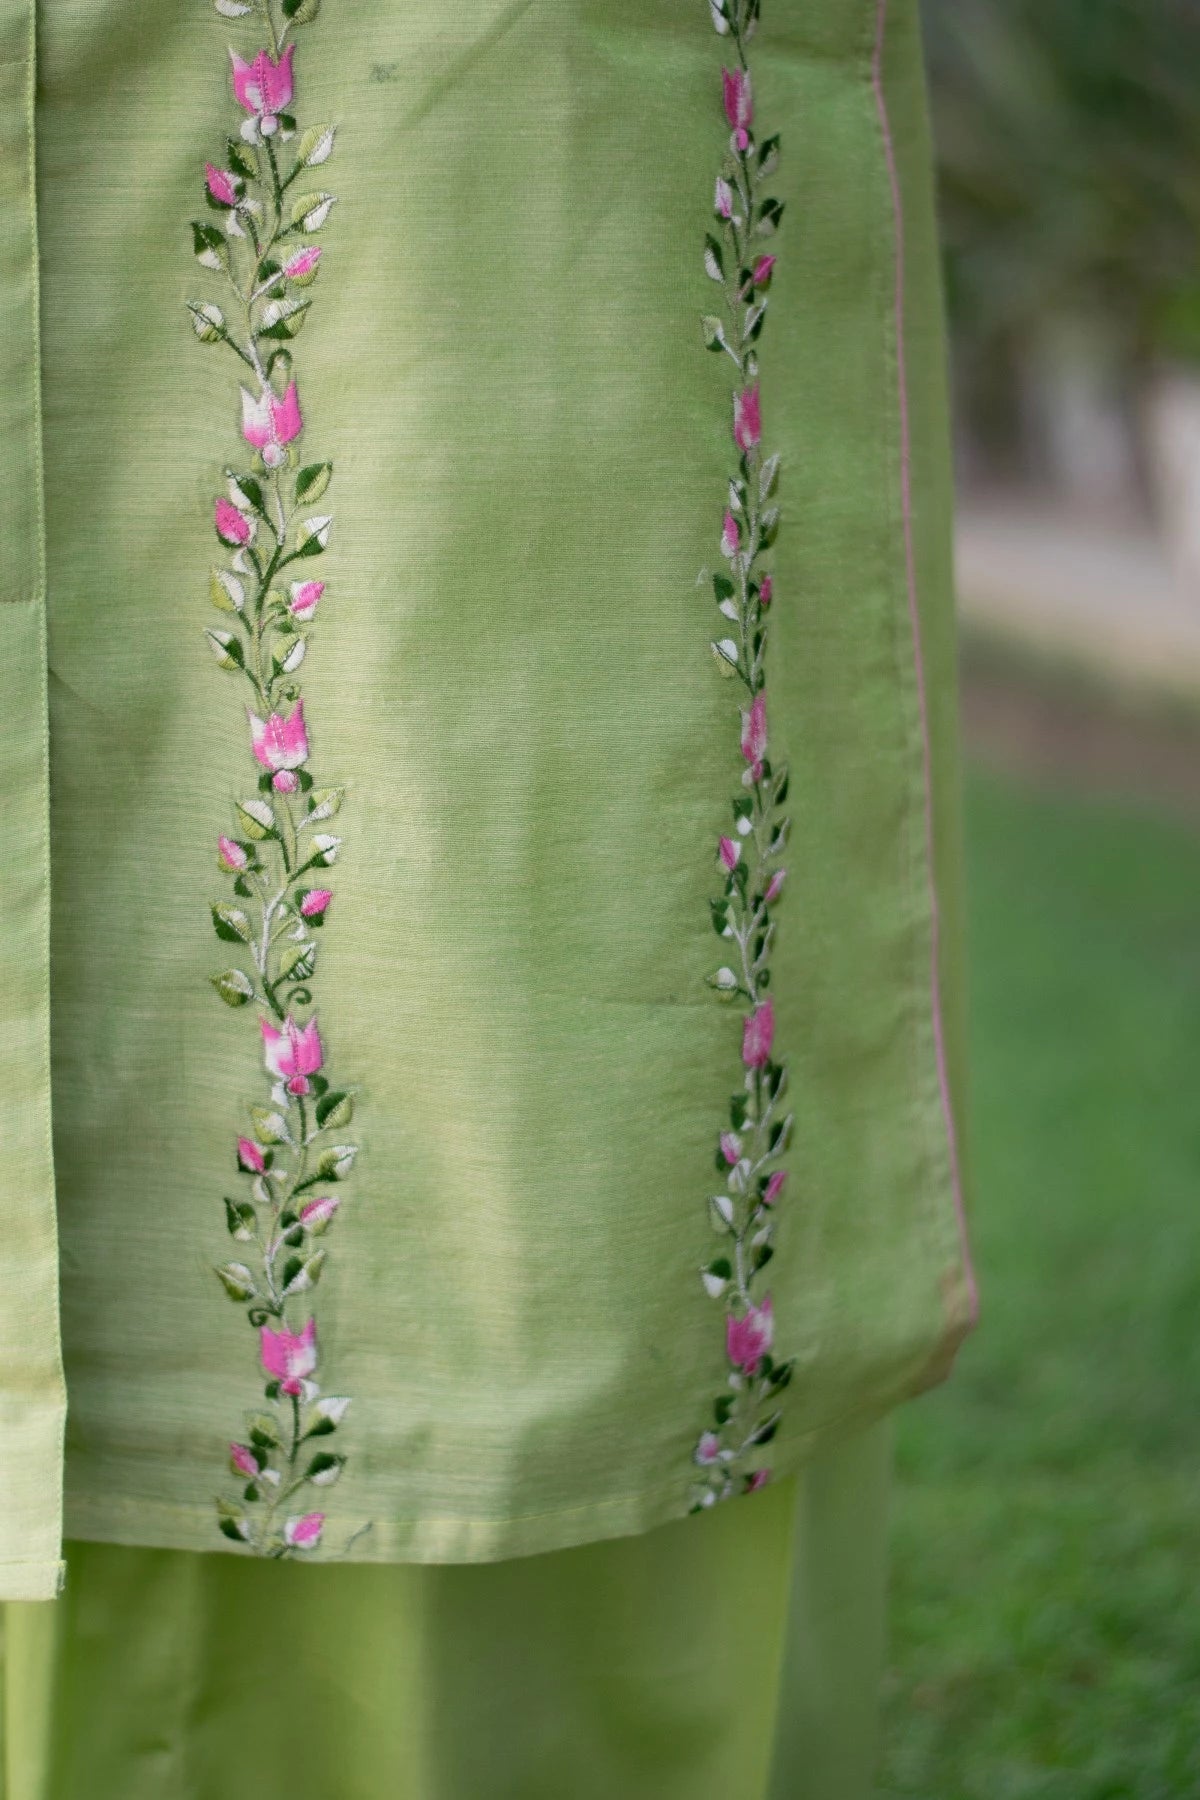 Indian women wearing designer embroidery kurti